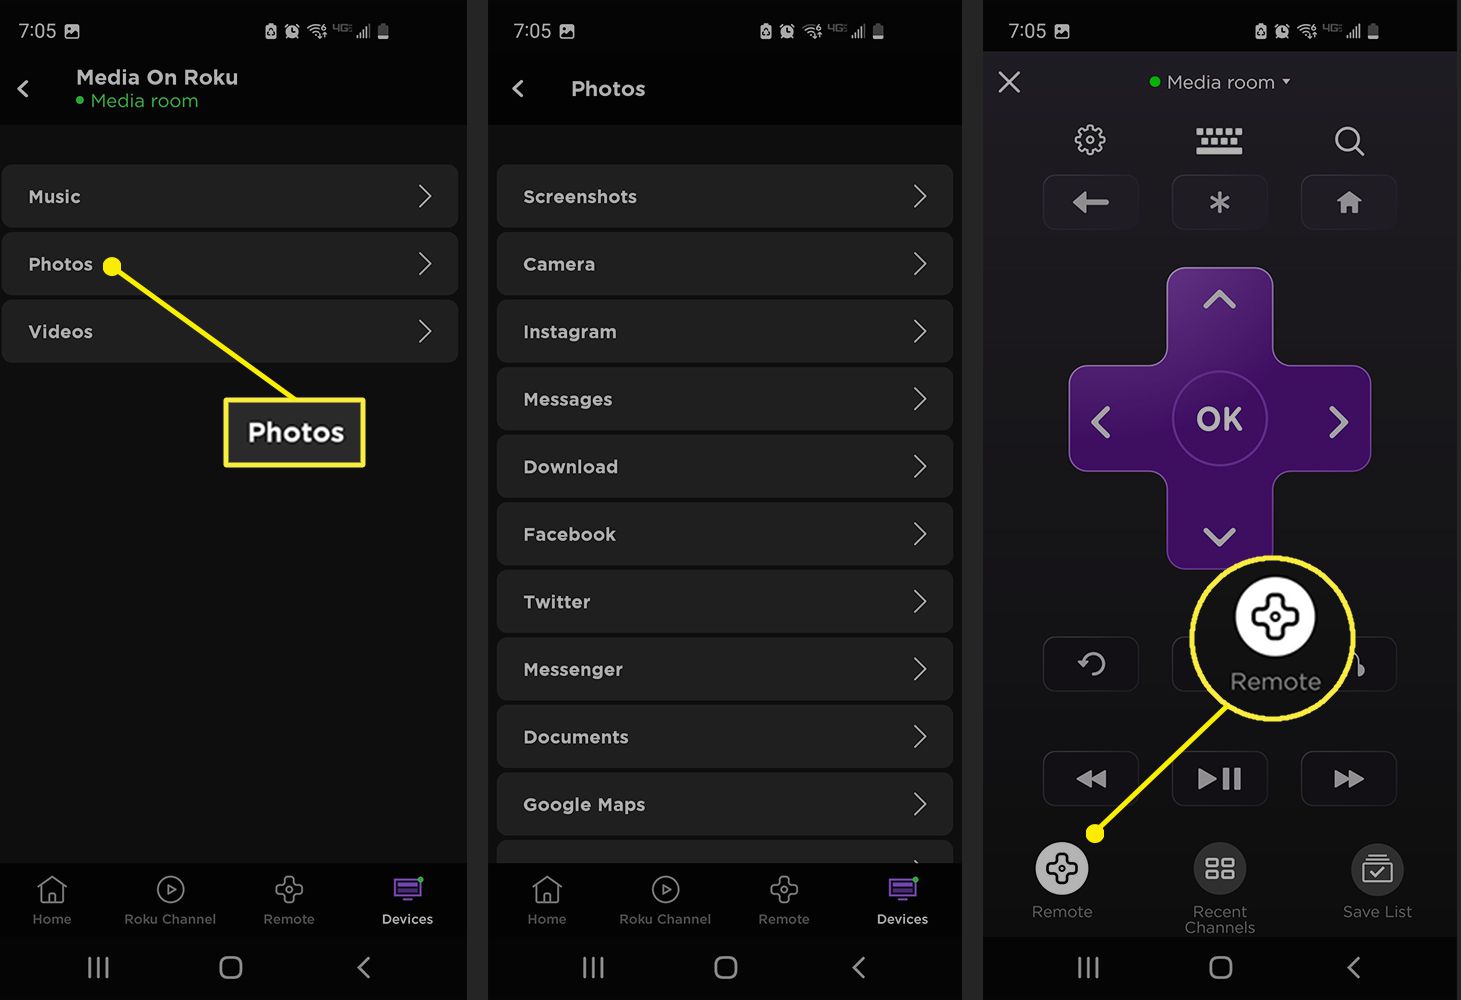 Εφαρμογή Roku που εμφανίζει πηγές μέσων με δυνατότητα cast και το κουμπί Remote